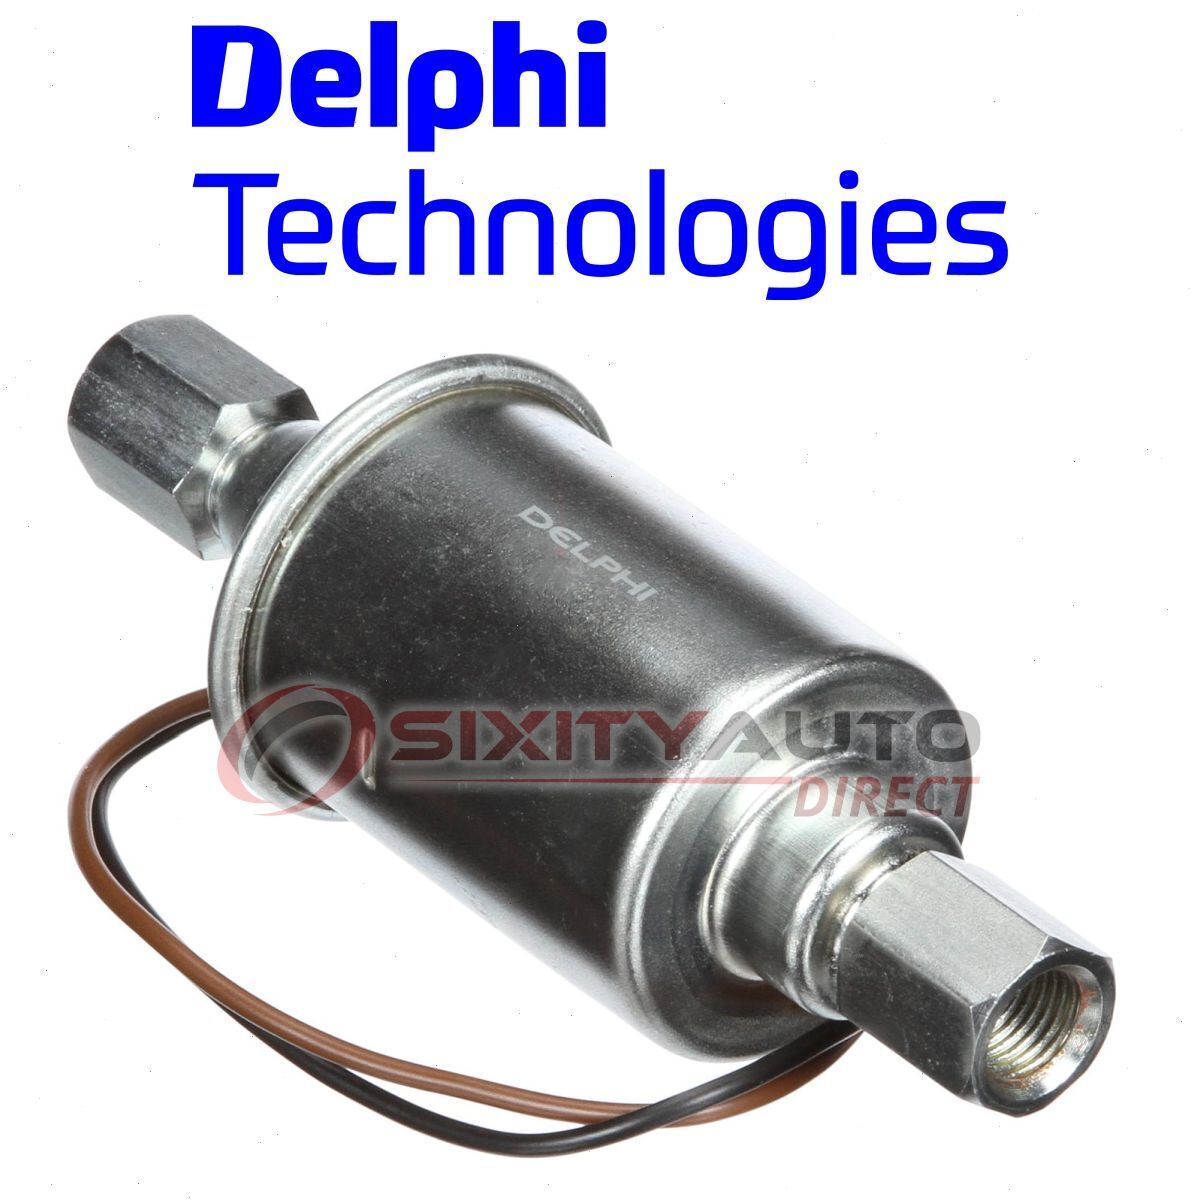 Delphi FD0038 Electric Fuel Pump for SP8127 SP1084MP SP1025 P74022 P74019 dy